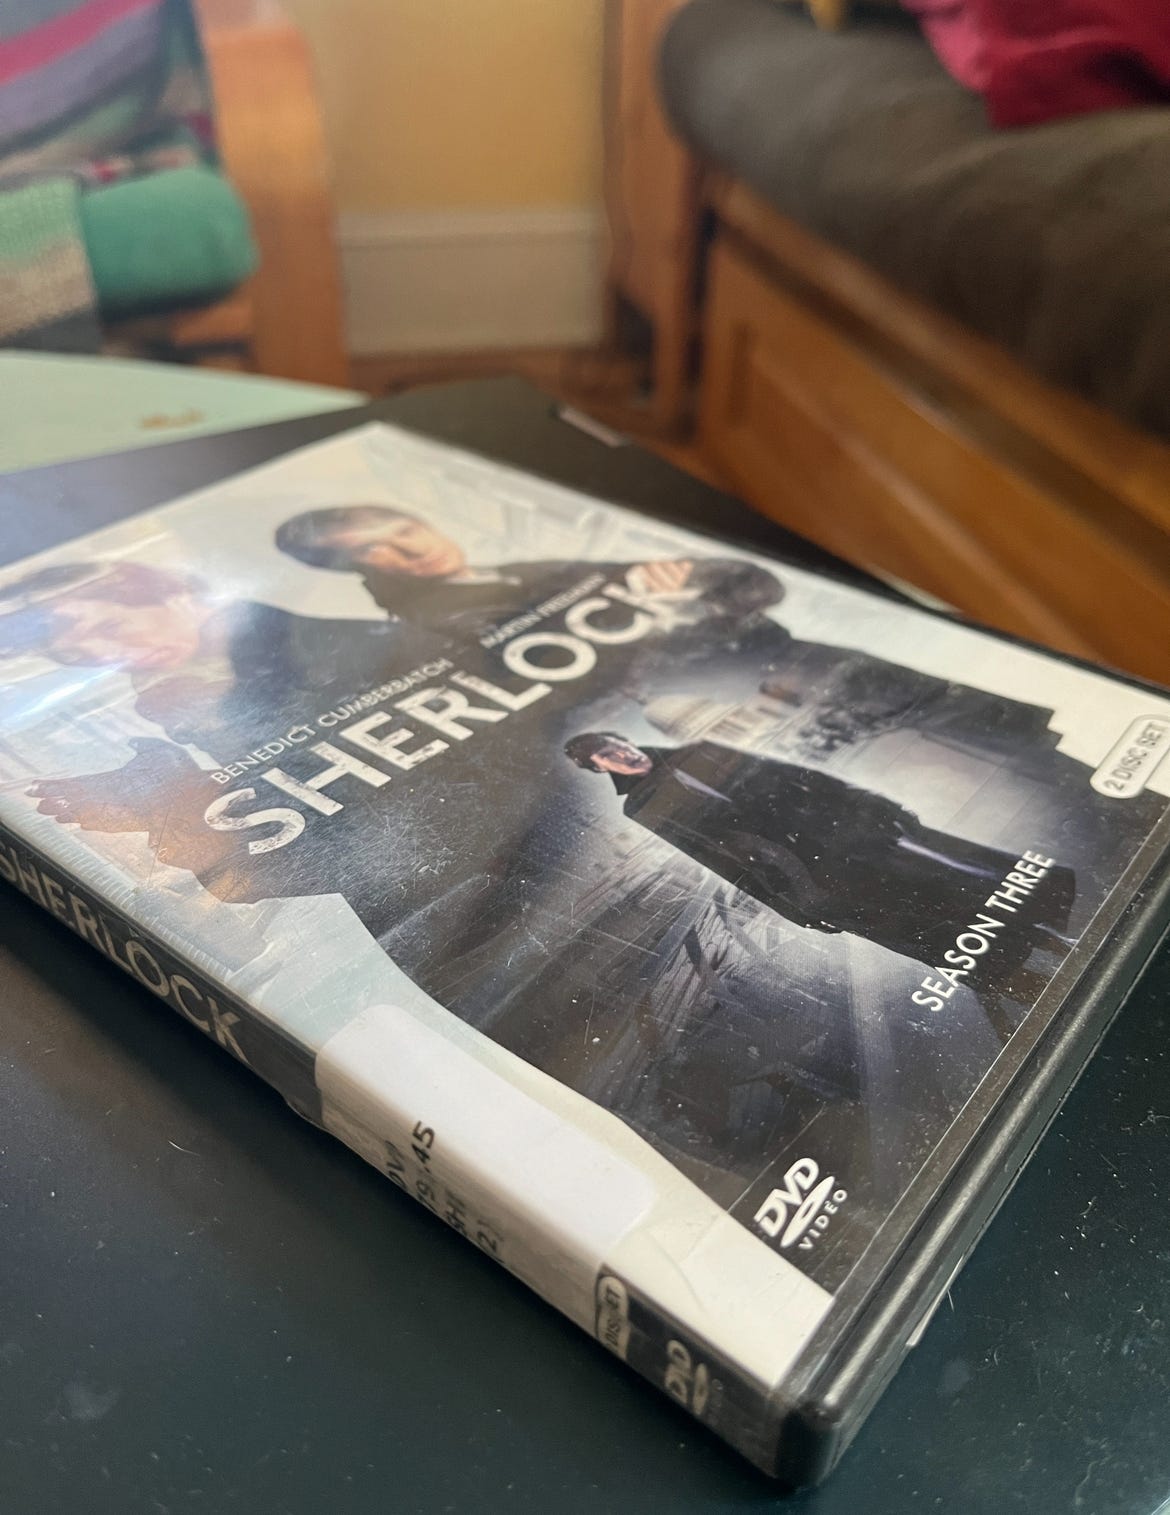 A DVD copy of Sherlock